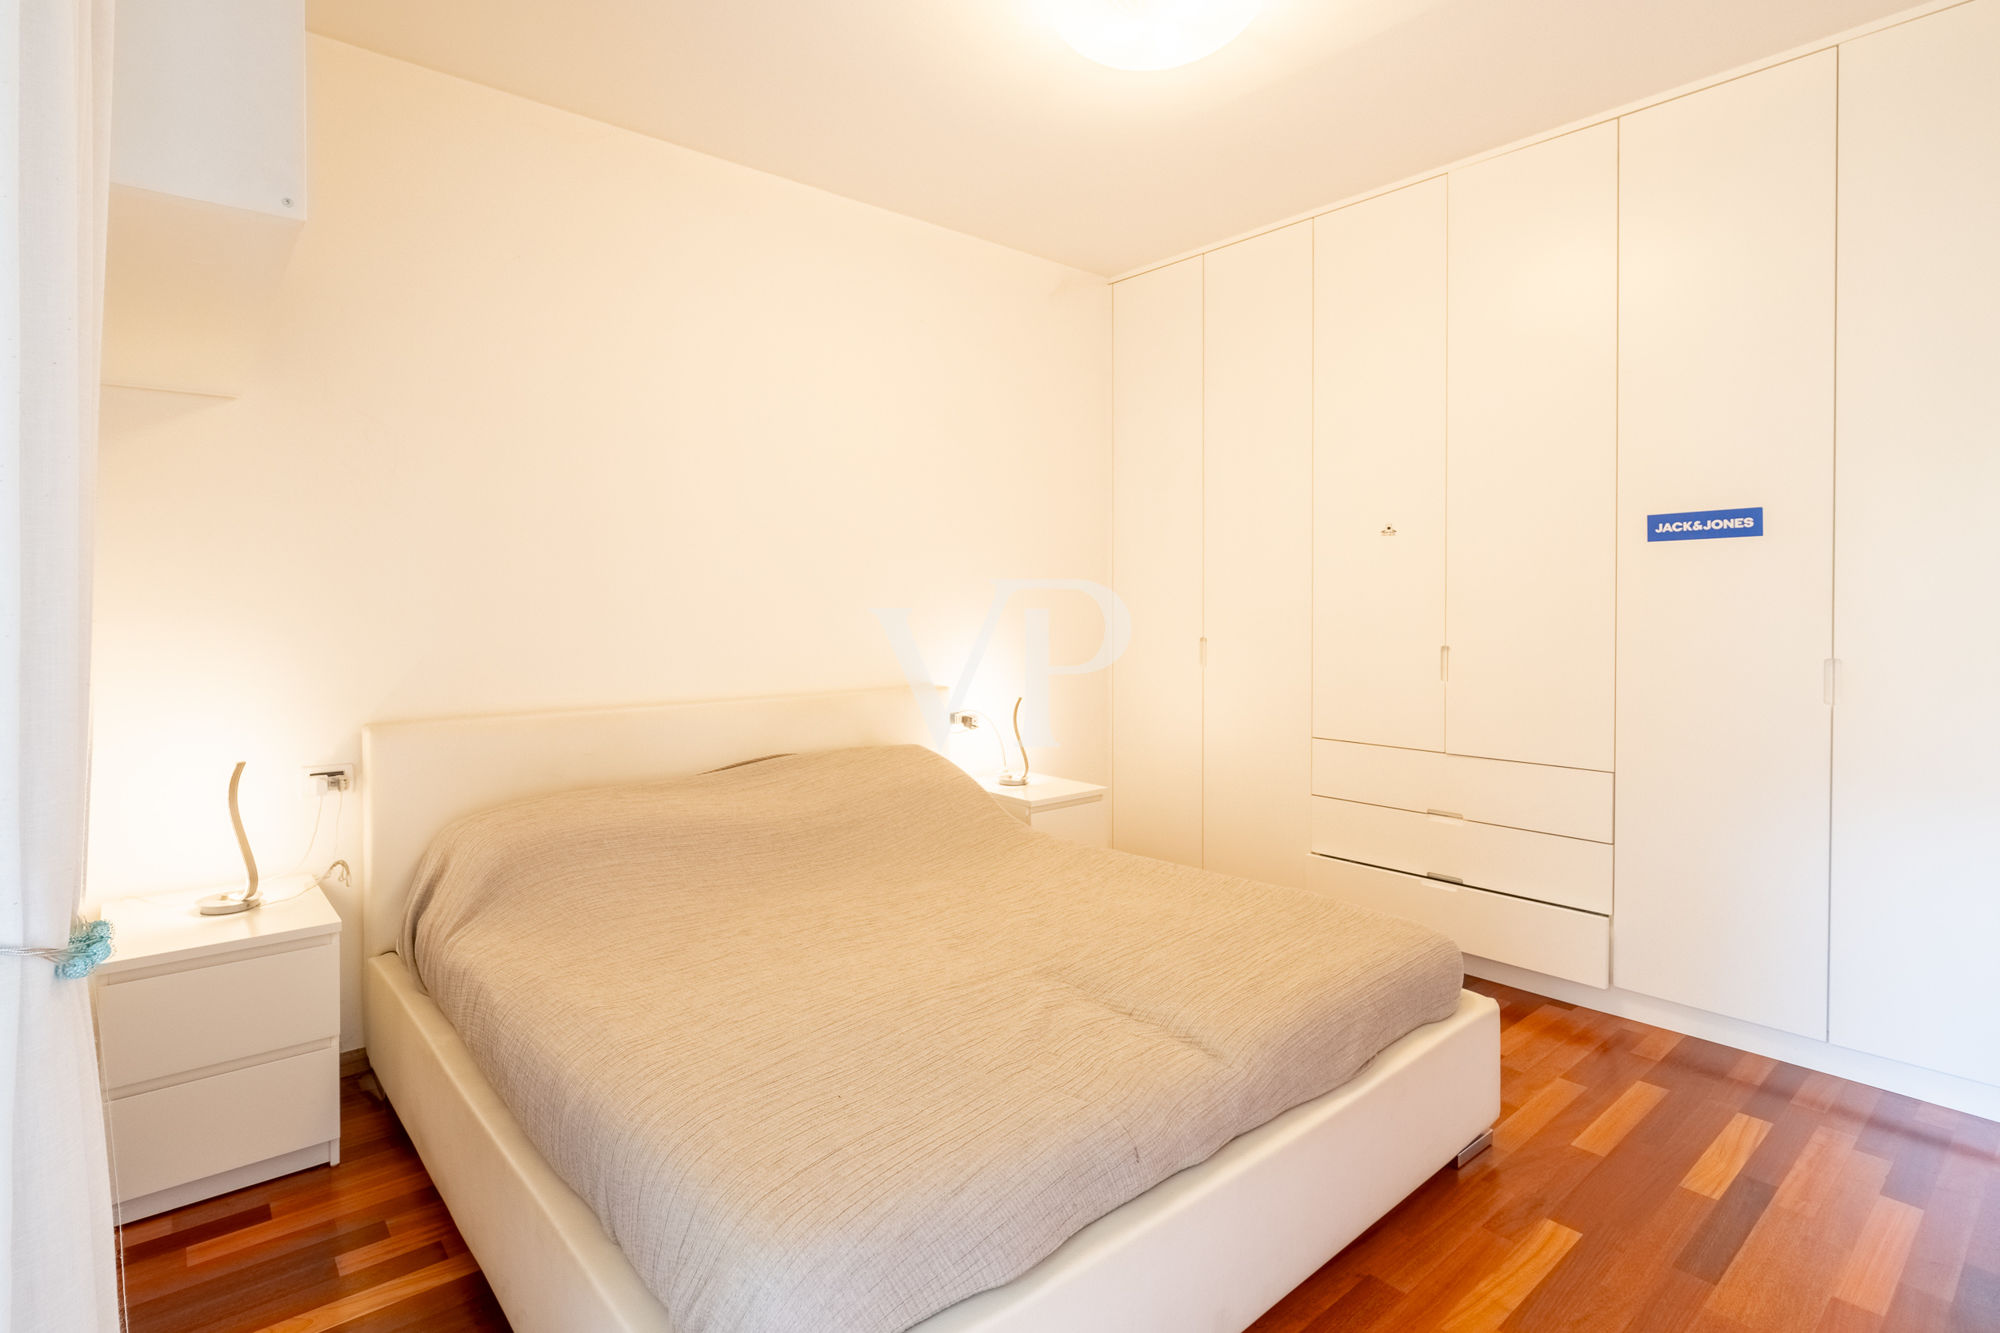 Zwei-Zimmer-Wohnung ideal für Investitionen in gut bedienter Lage